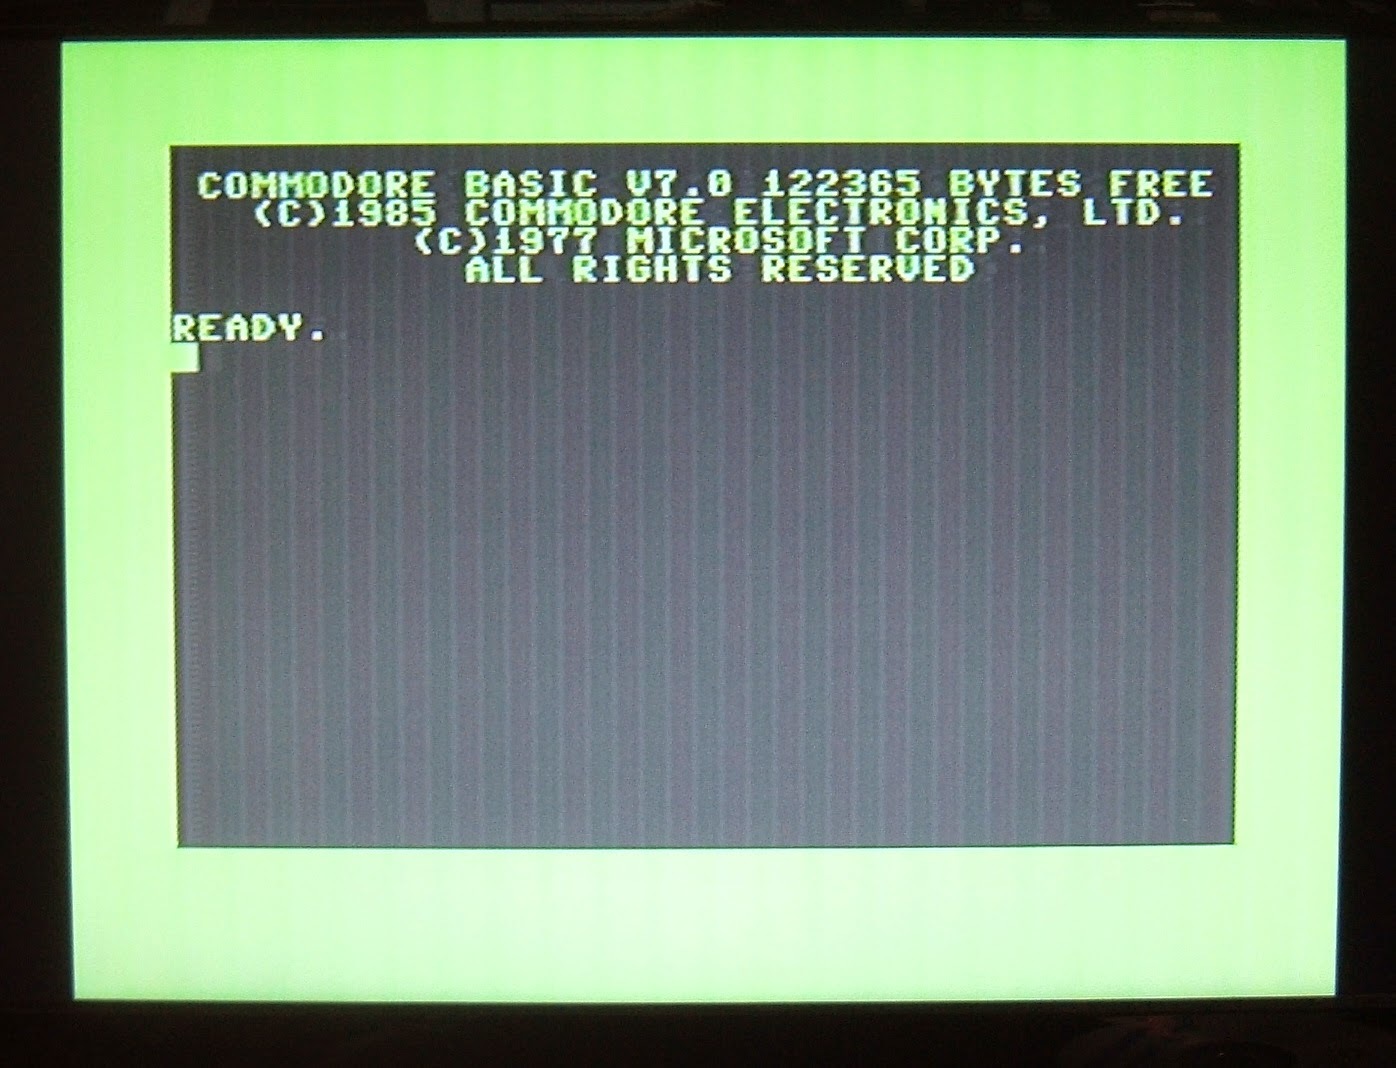 Commodore 128 emulator  for Raspberry Pi